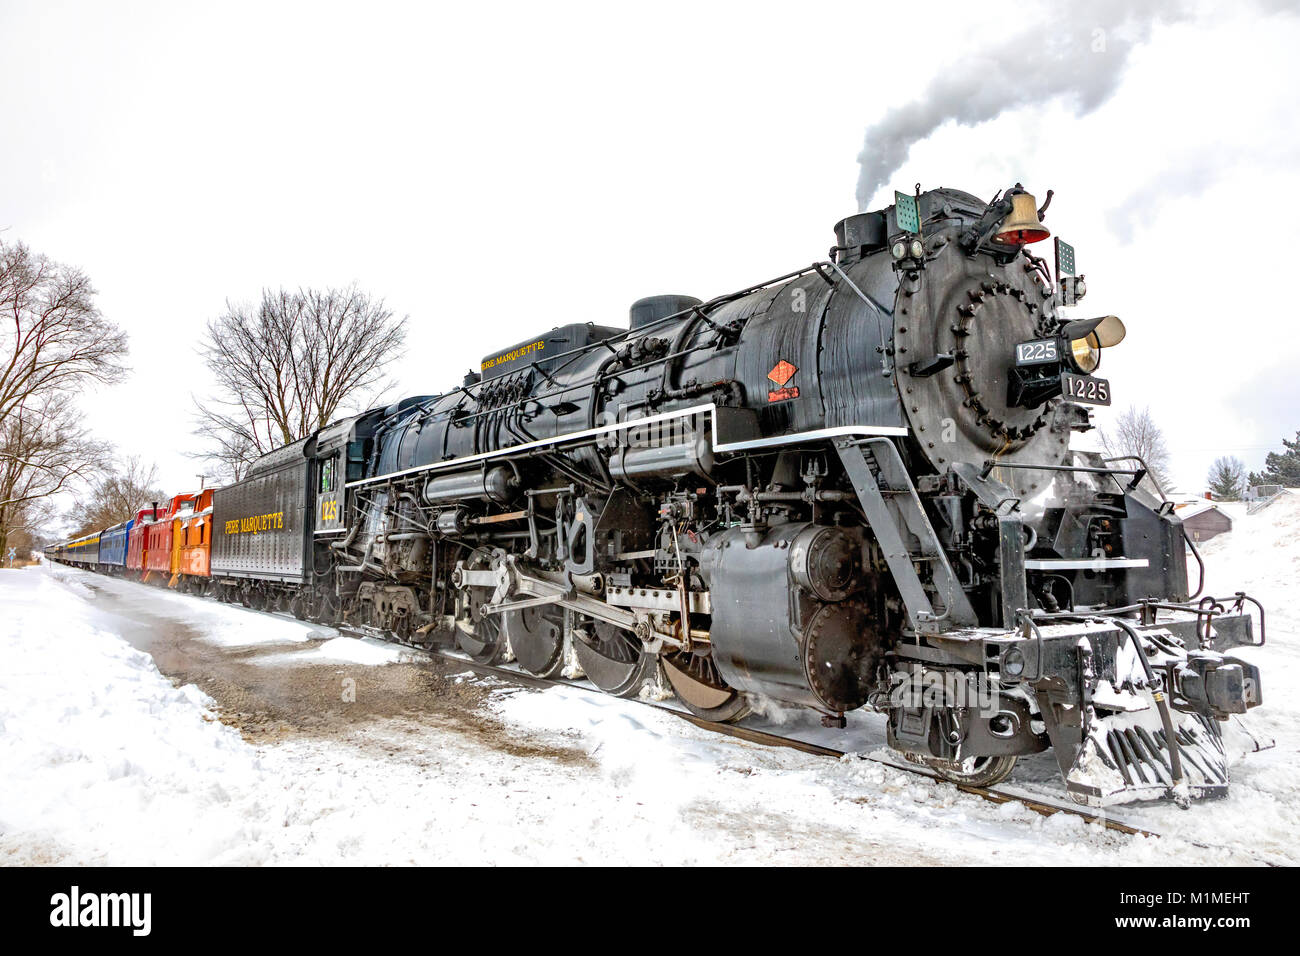 El Pere Marquette 1225 "Polo Norte" expresa una vintage motor a vapor, expulsando vapor en un día de nieve Foto de stock